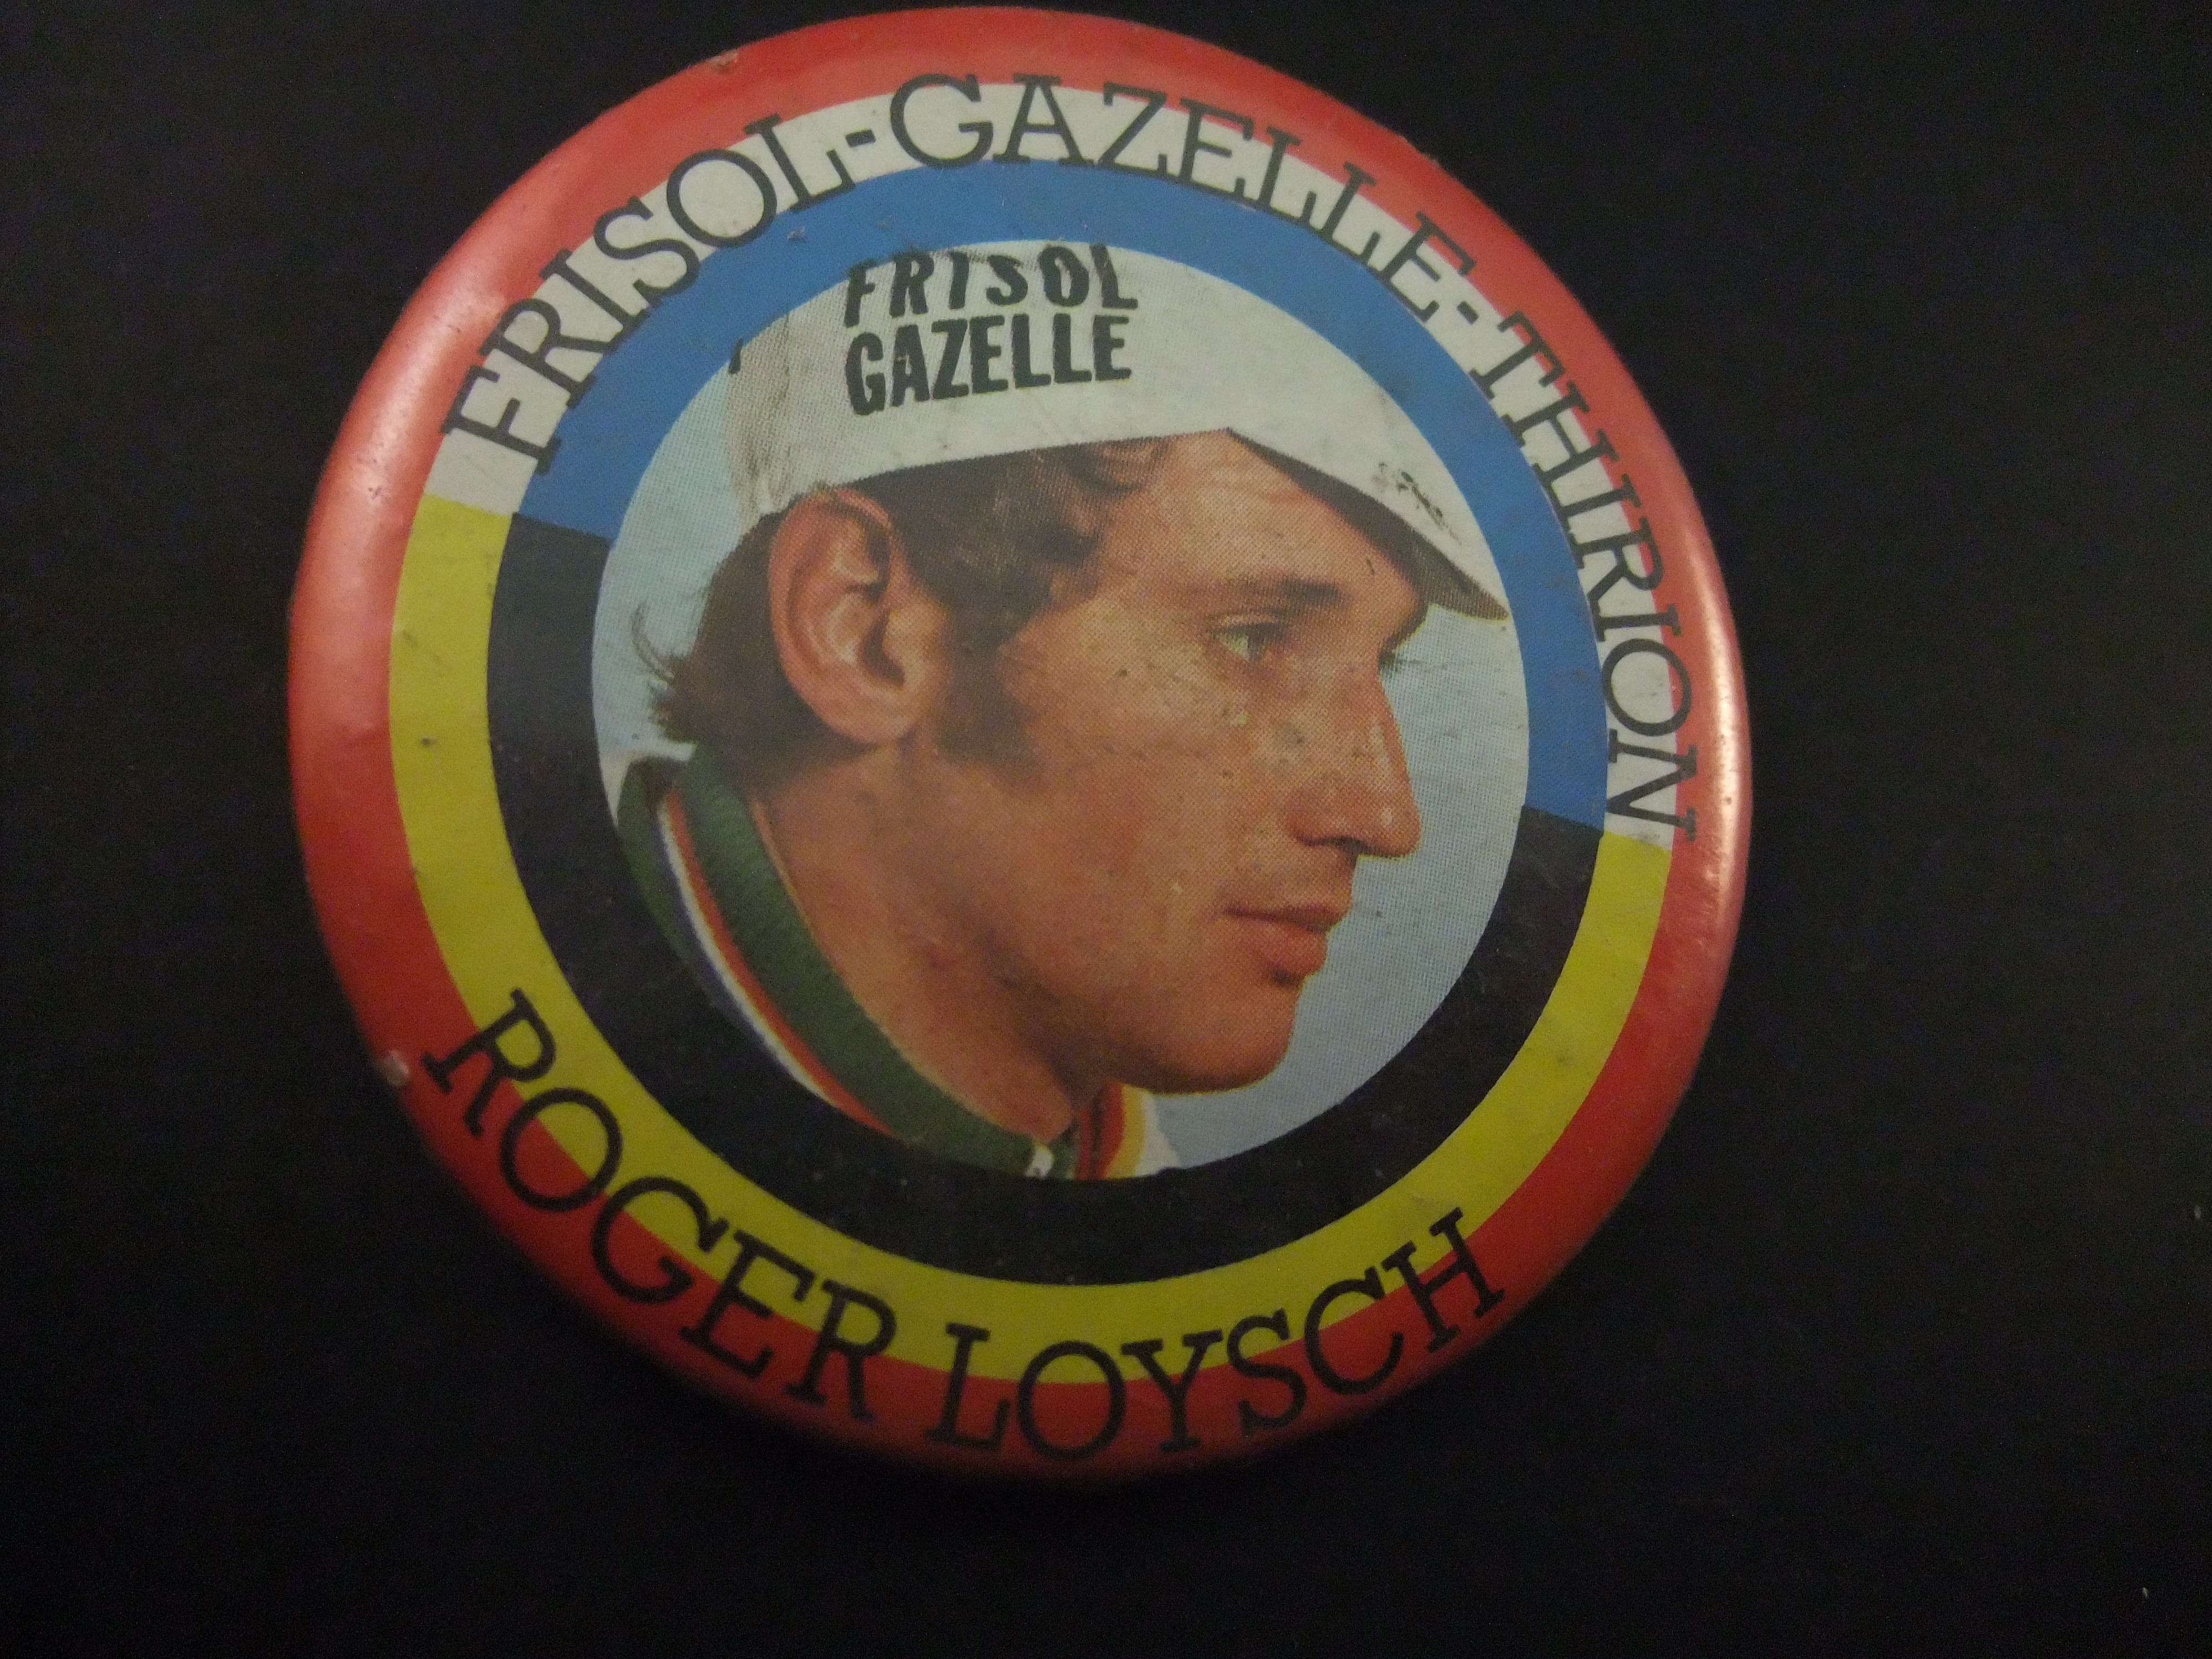 Roger Loysch ( Belgisch wielrenner) Frisol, Gazelle - Thirion wielerploeg